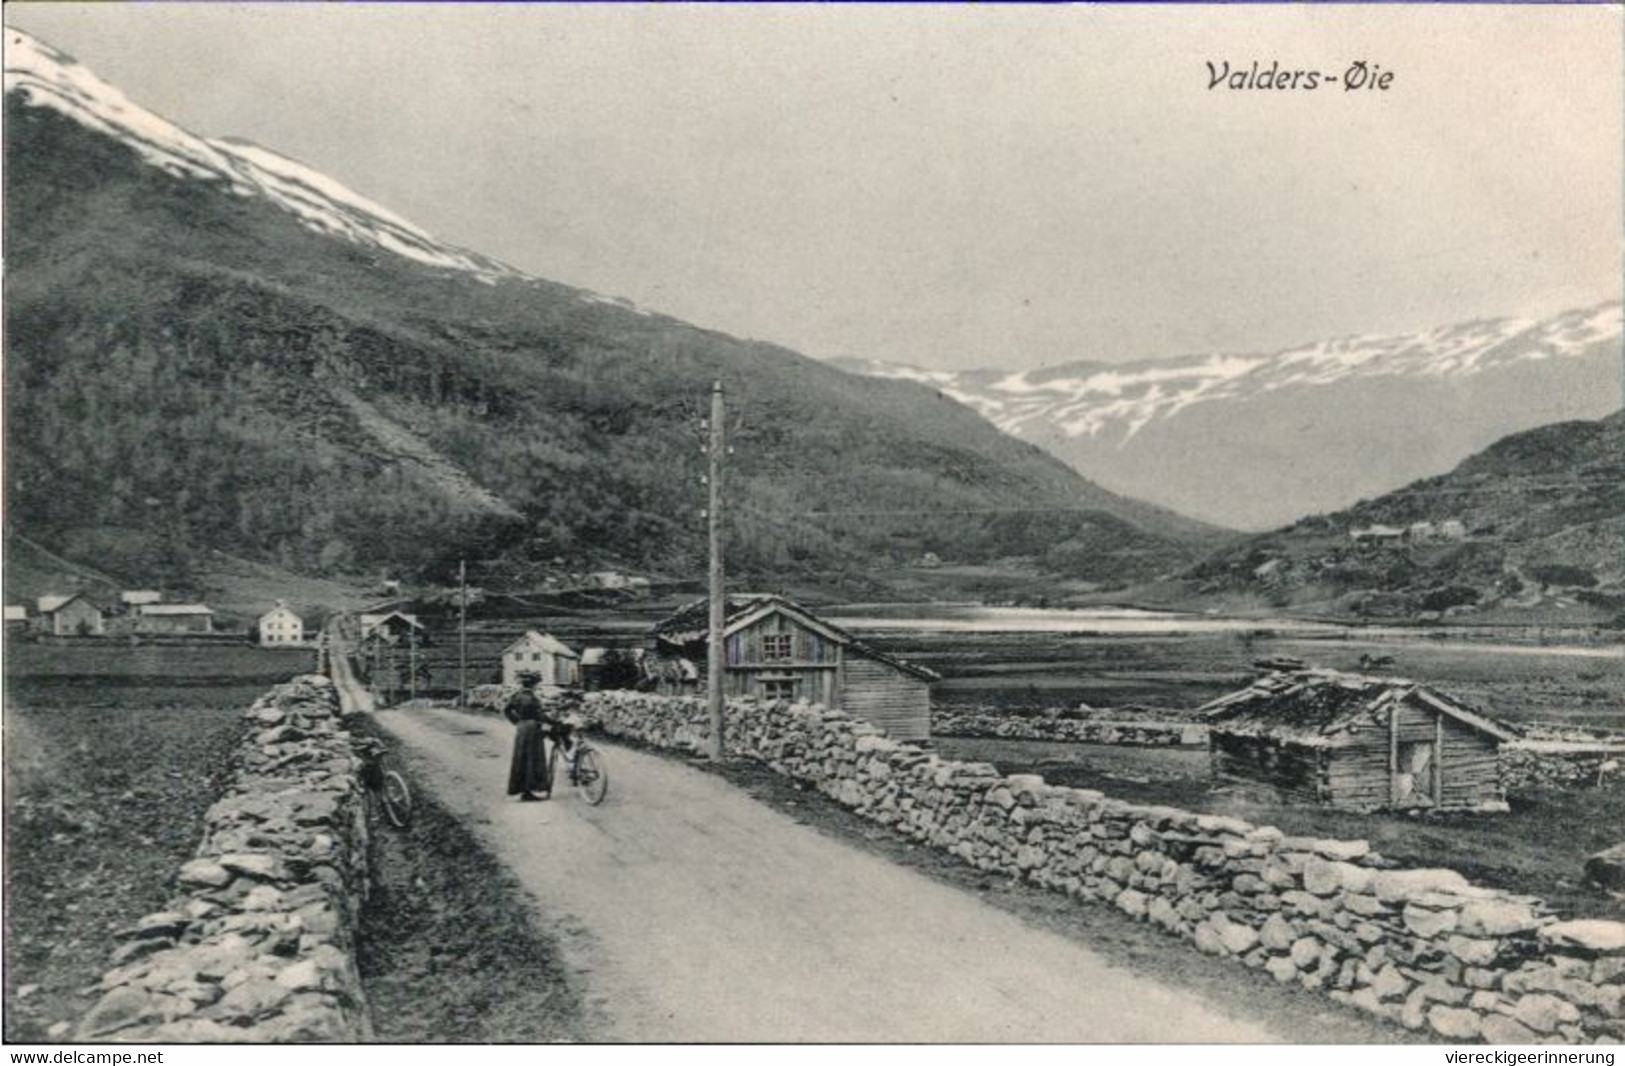 ! Old Postcard Valders Oie, Norwegen, Norway, Norge - Norvège